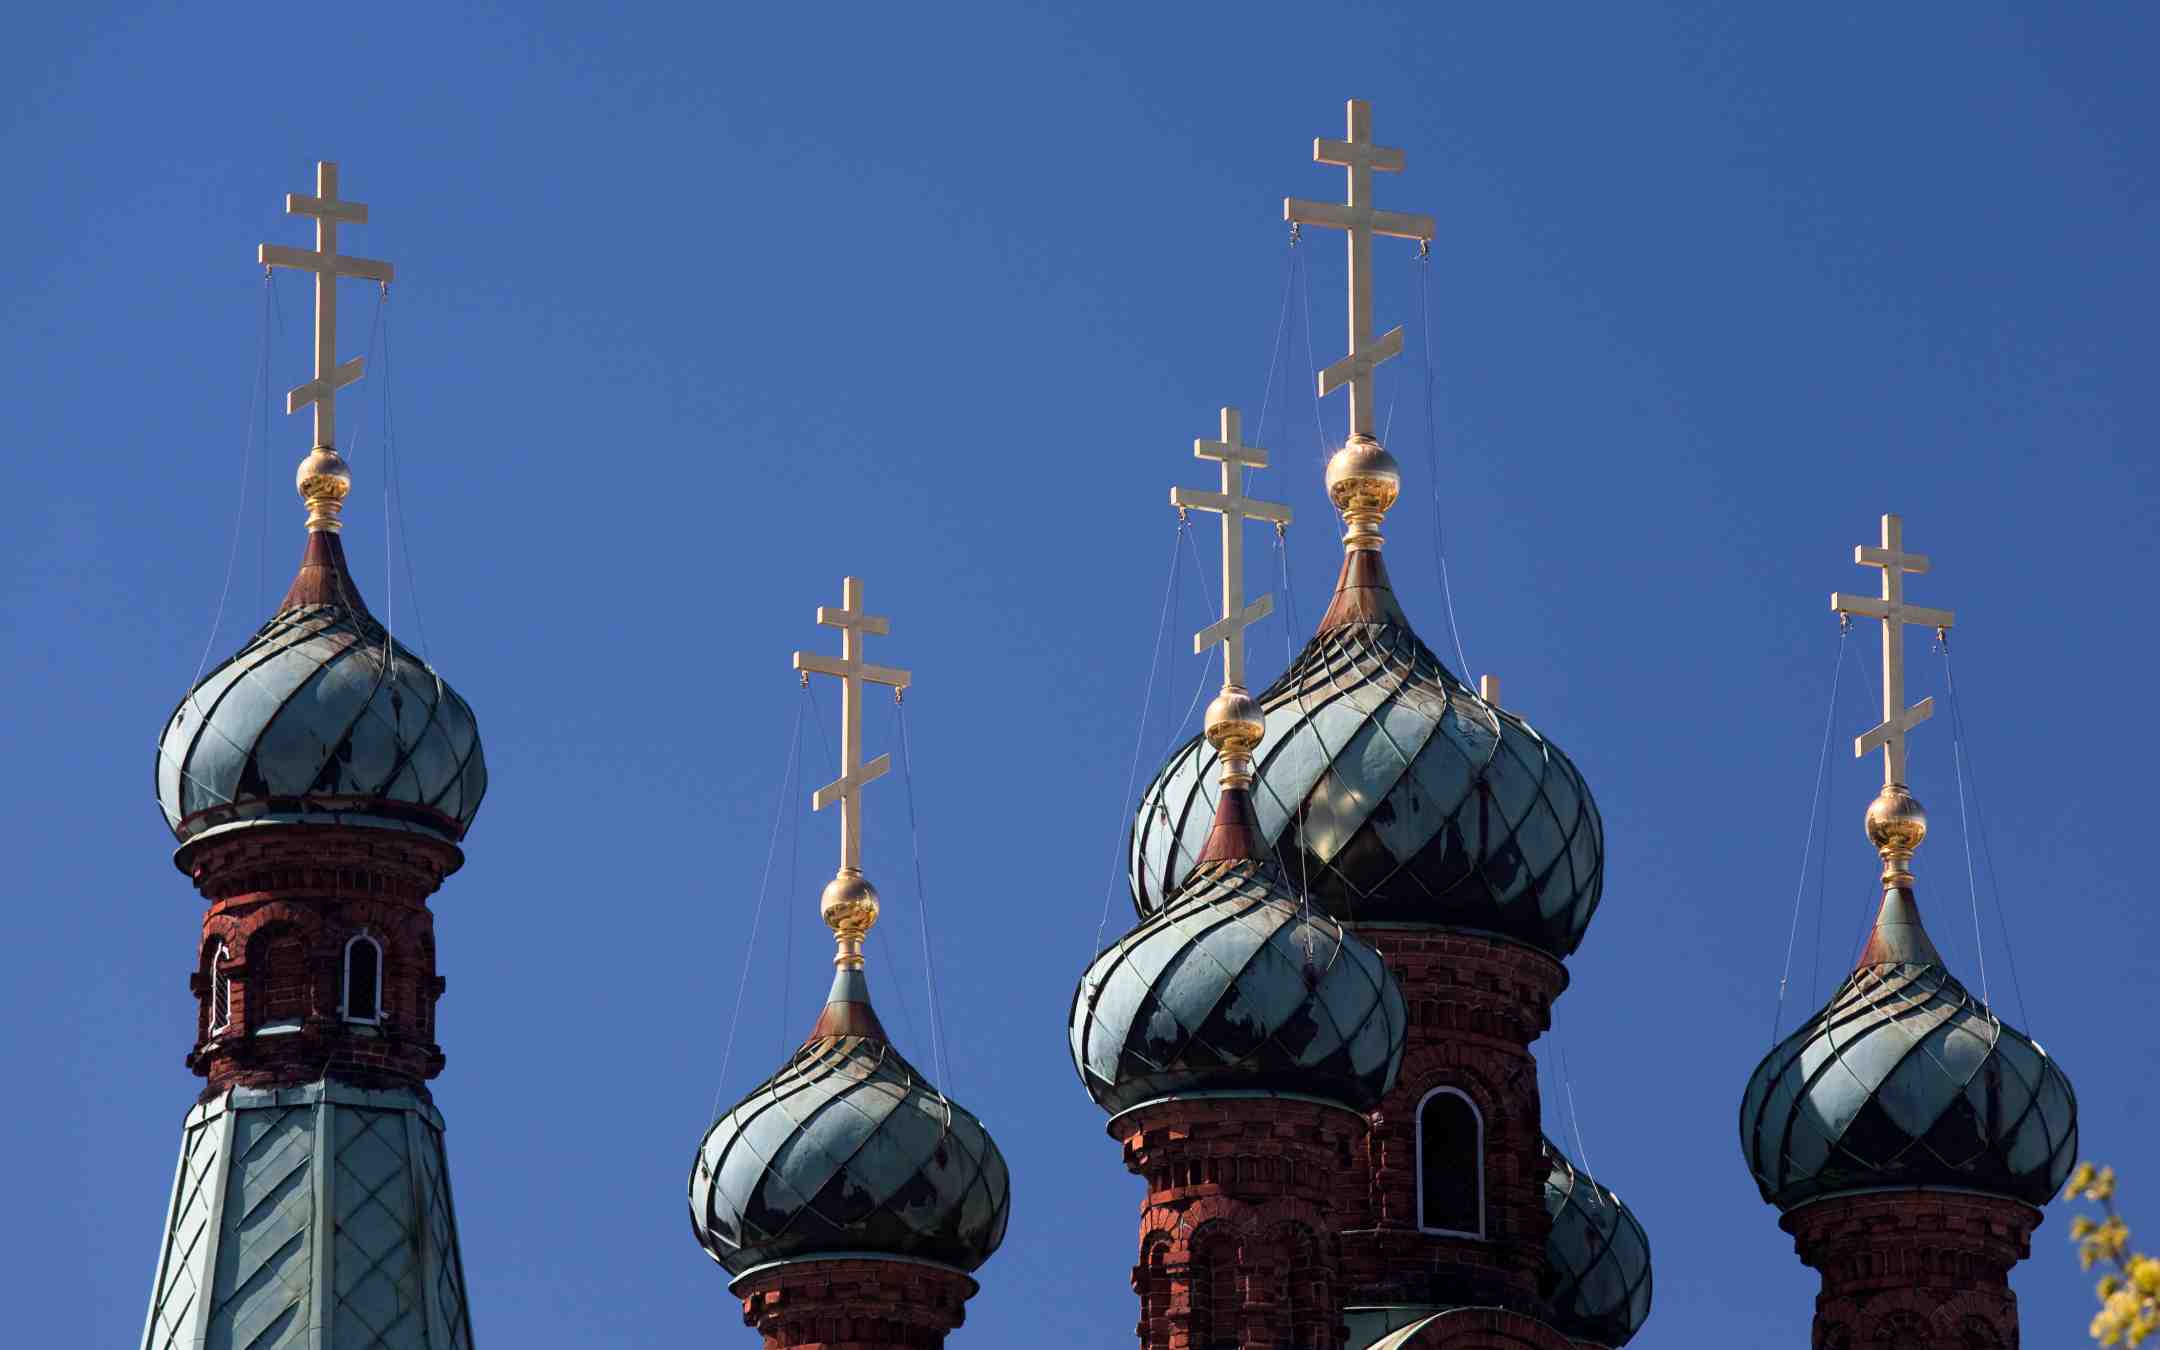 Tampereen ortodoksisen kirkon kupolit ja ristit